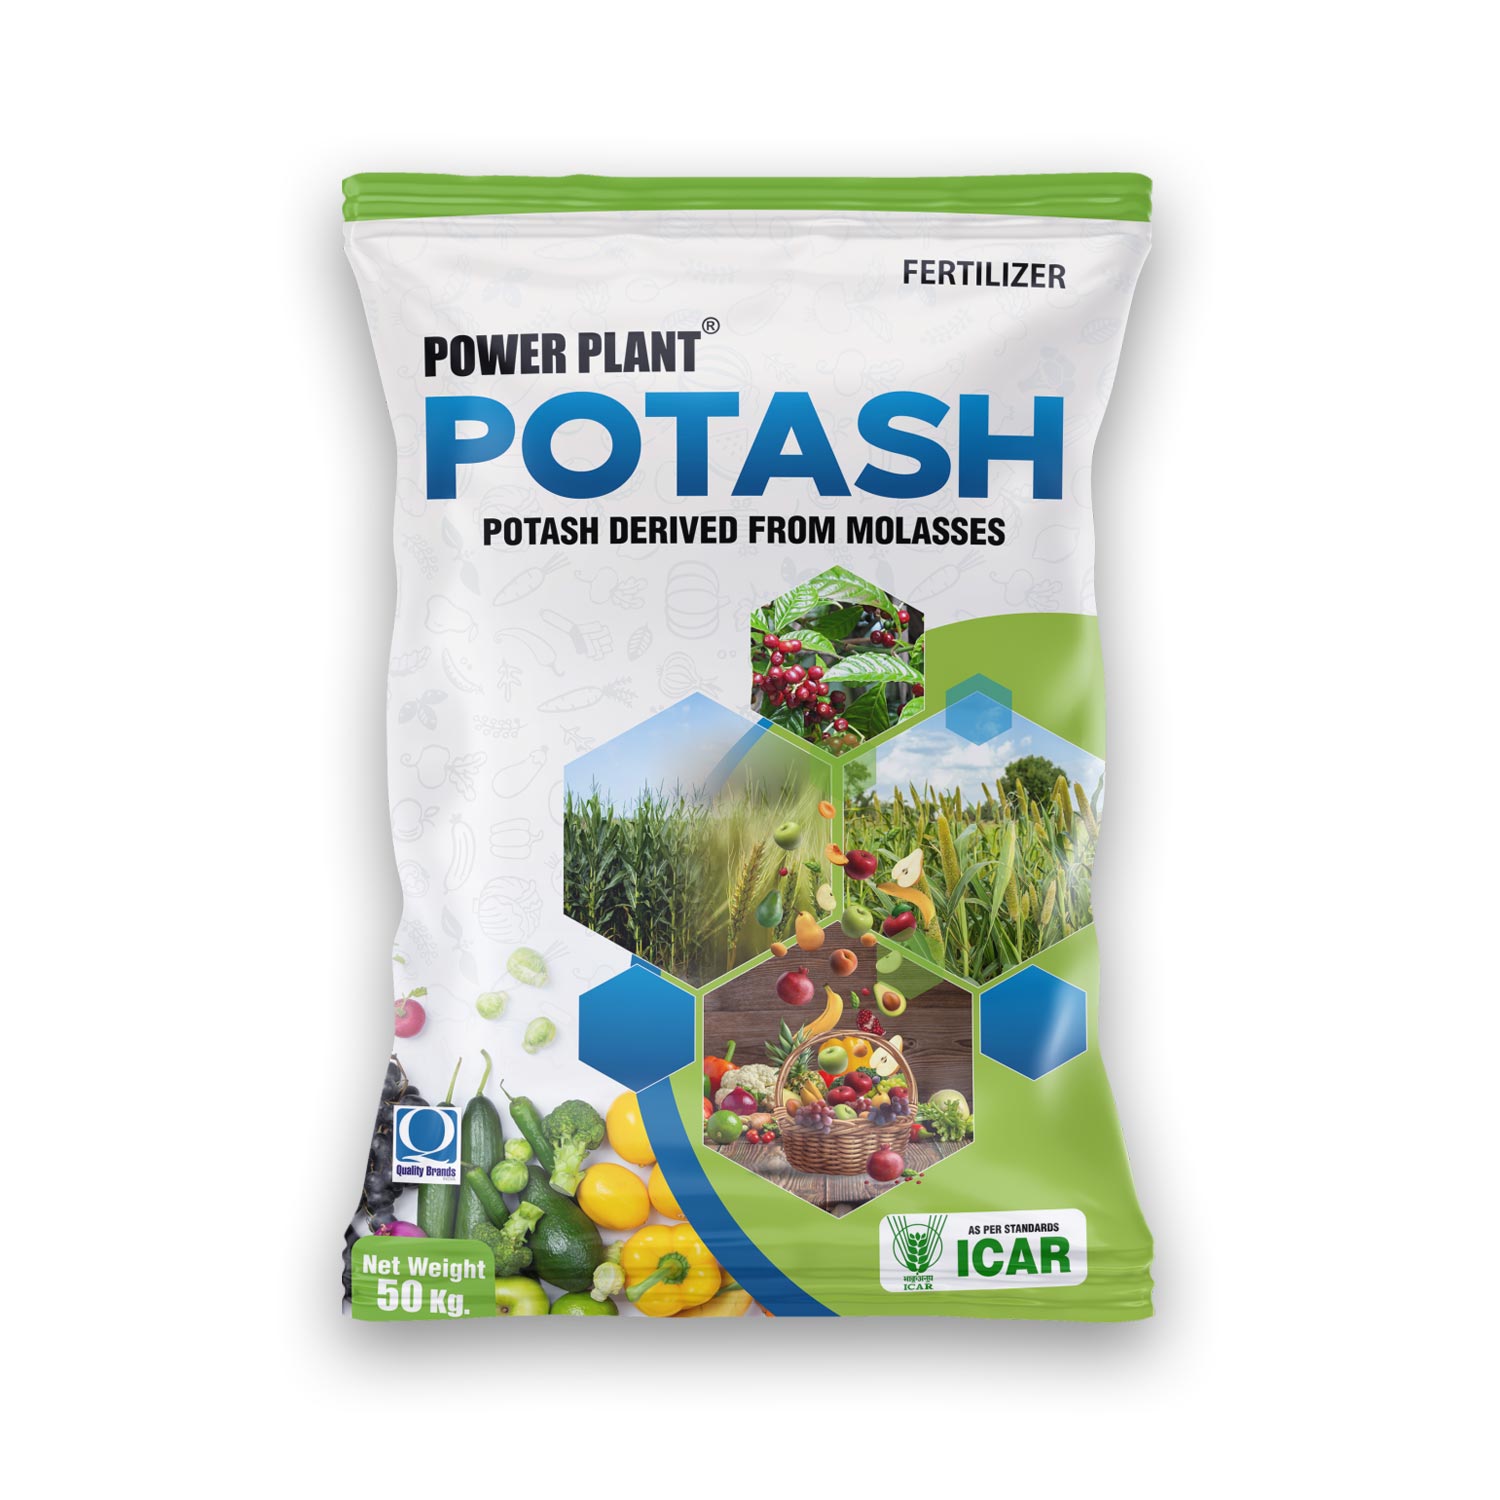 Potash